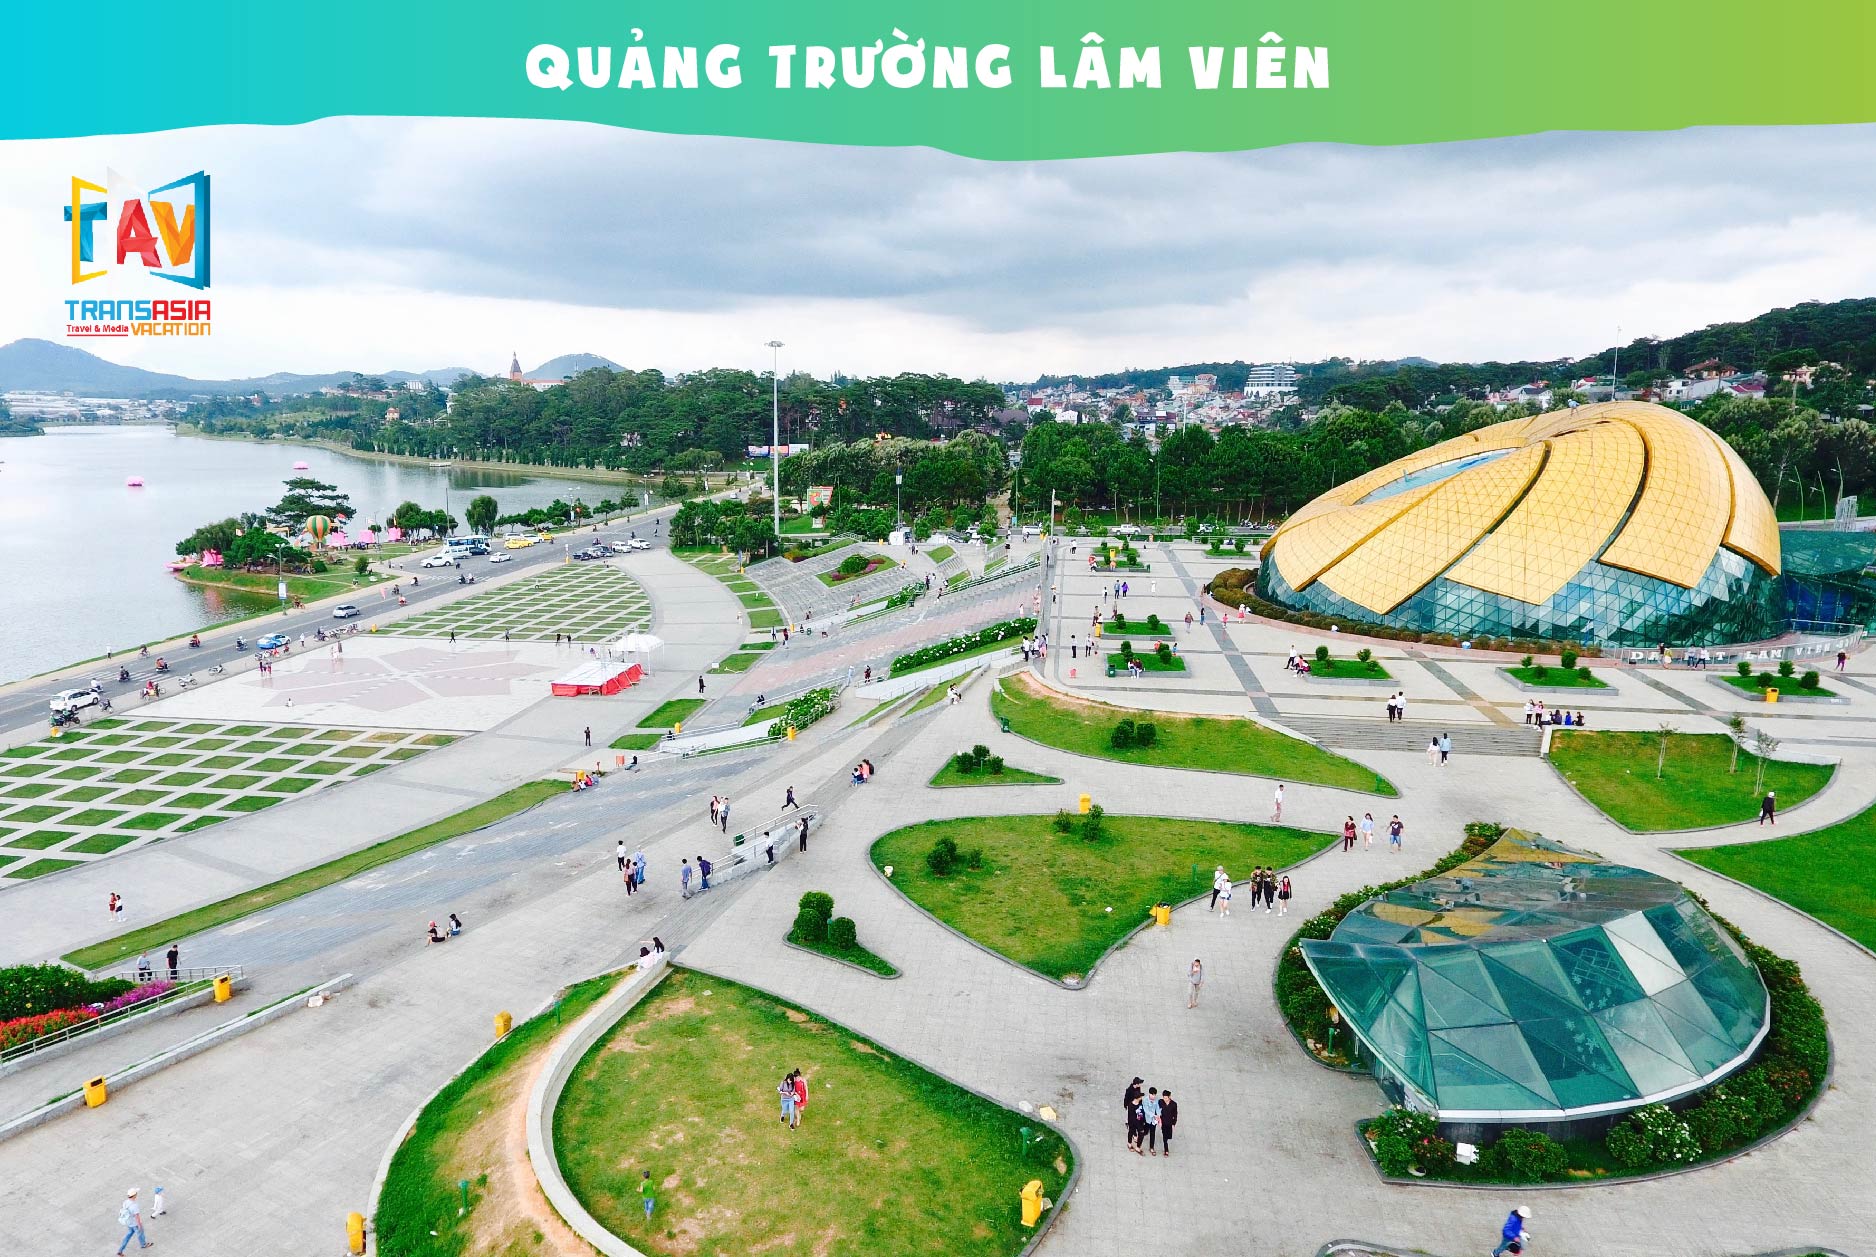 Quảng trường Lâm Viên - Tour du lịch Đà Lạt 3N3D - khách sạn 3 sao - khởi hành T6 hàng tuần cùng TAV TRAVEL